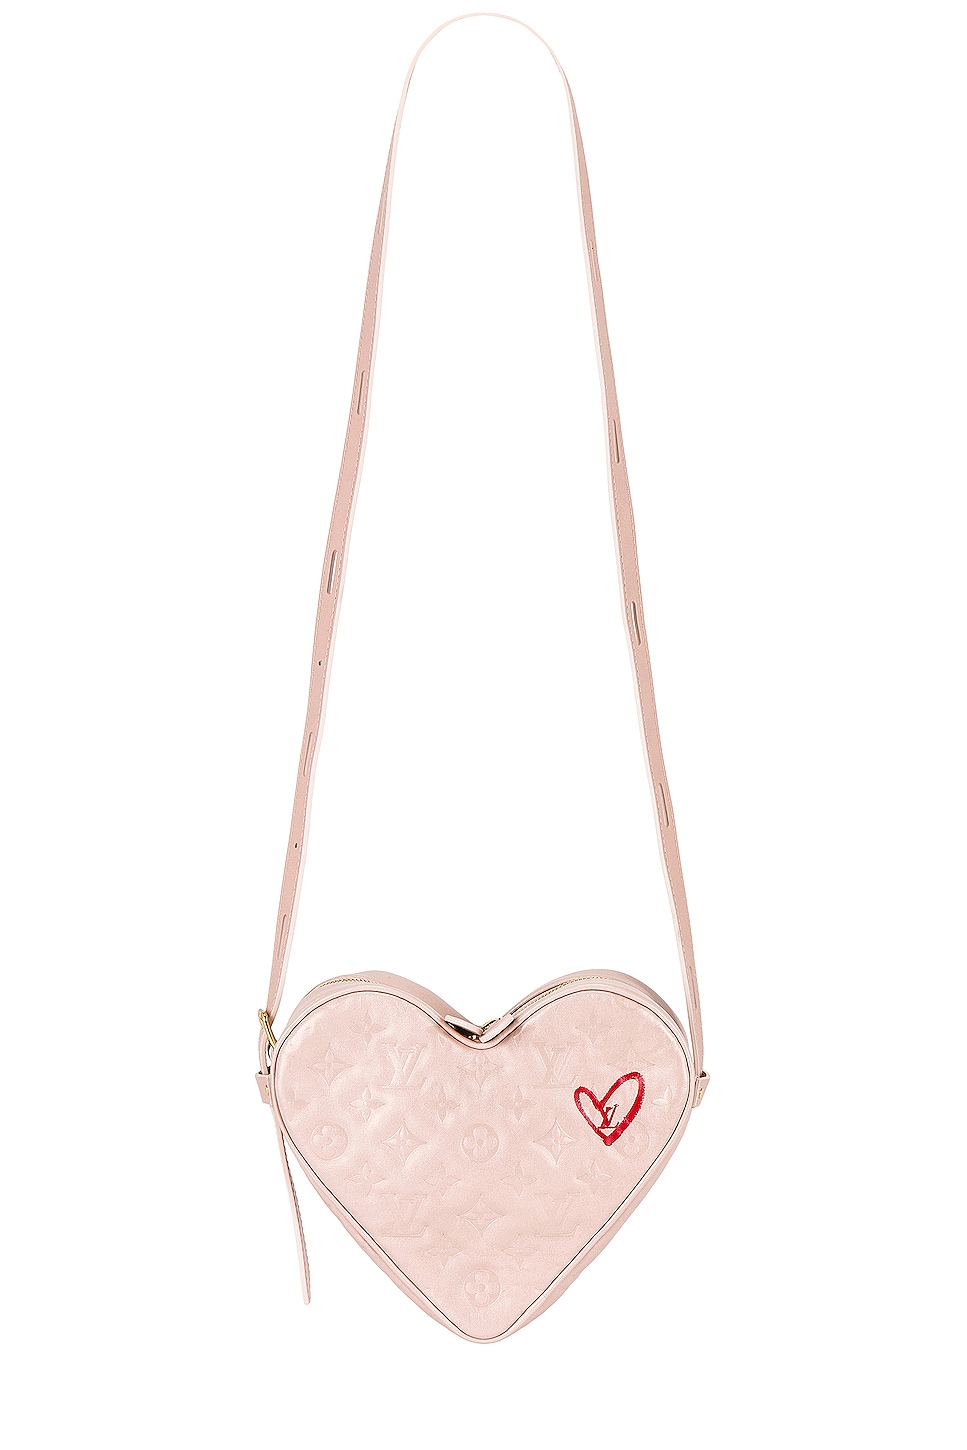 FWRD Renew Louis Vuitton Fall in Love Monogram Sac Coeur Bag in